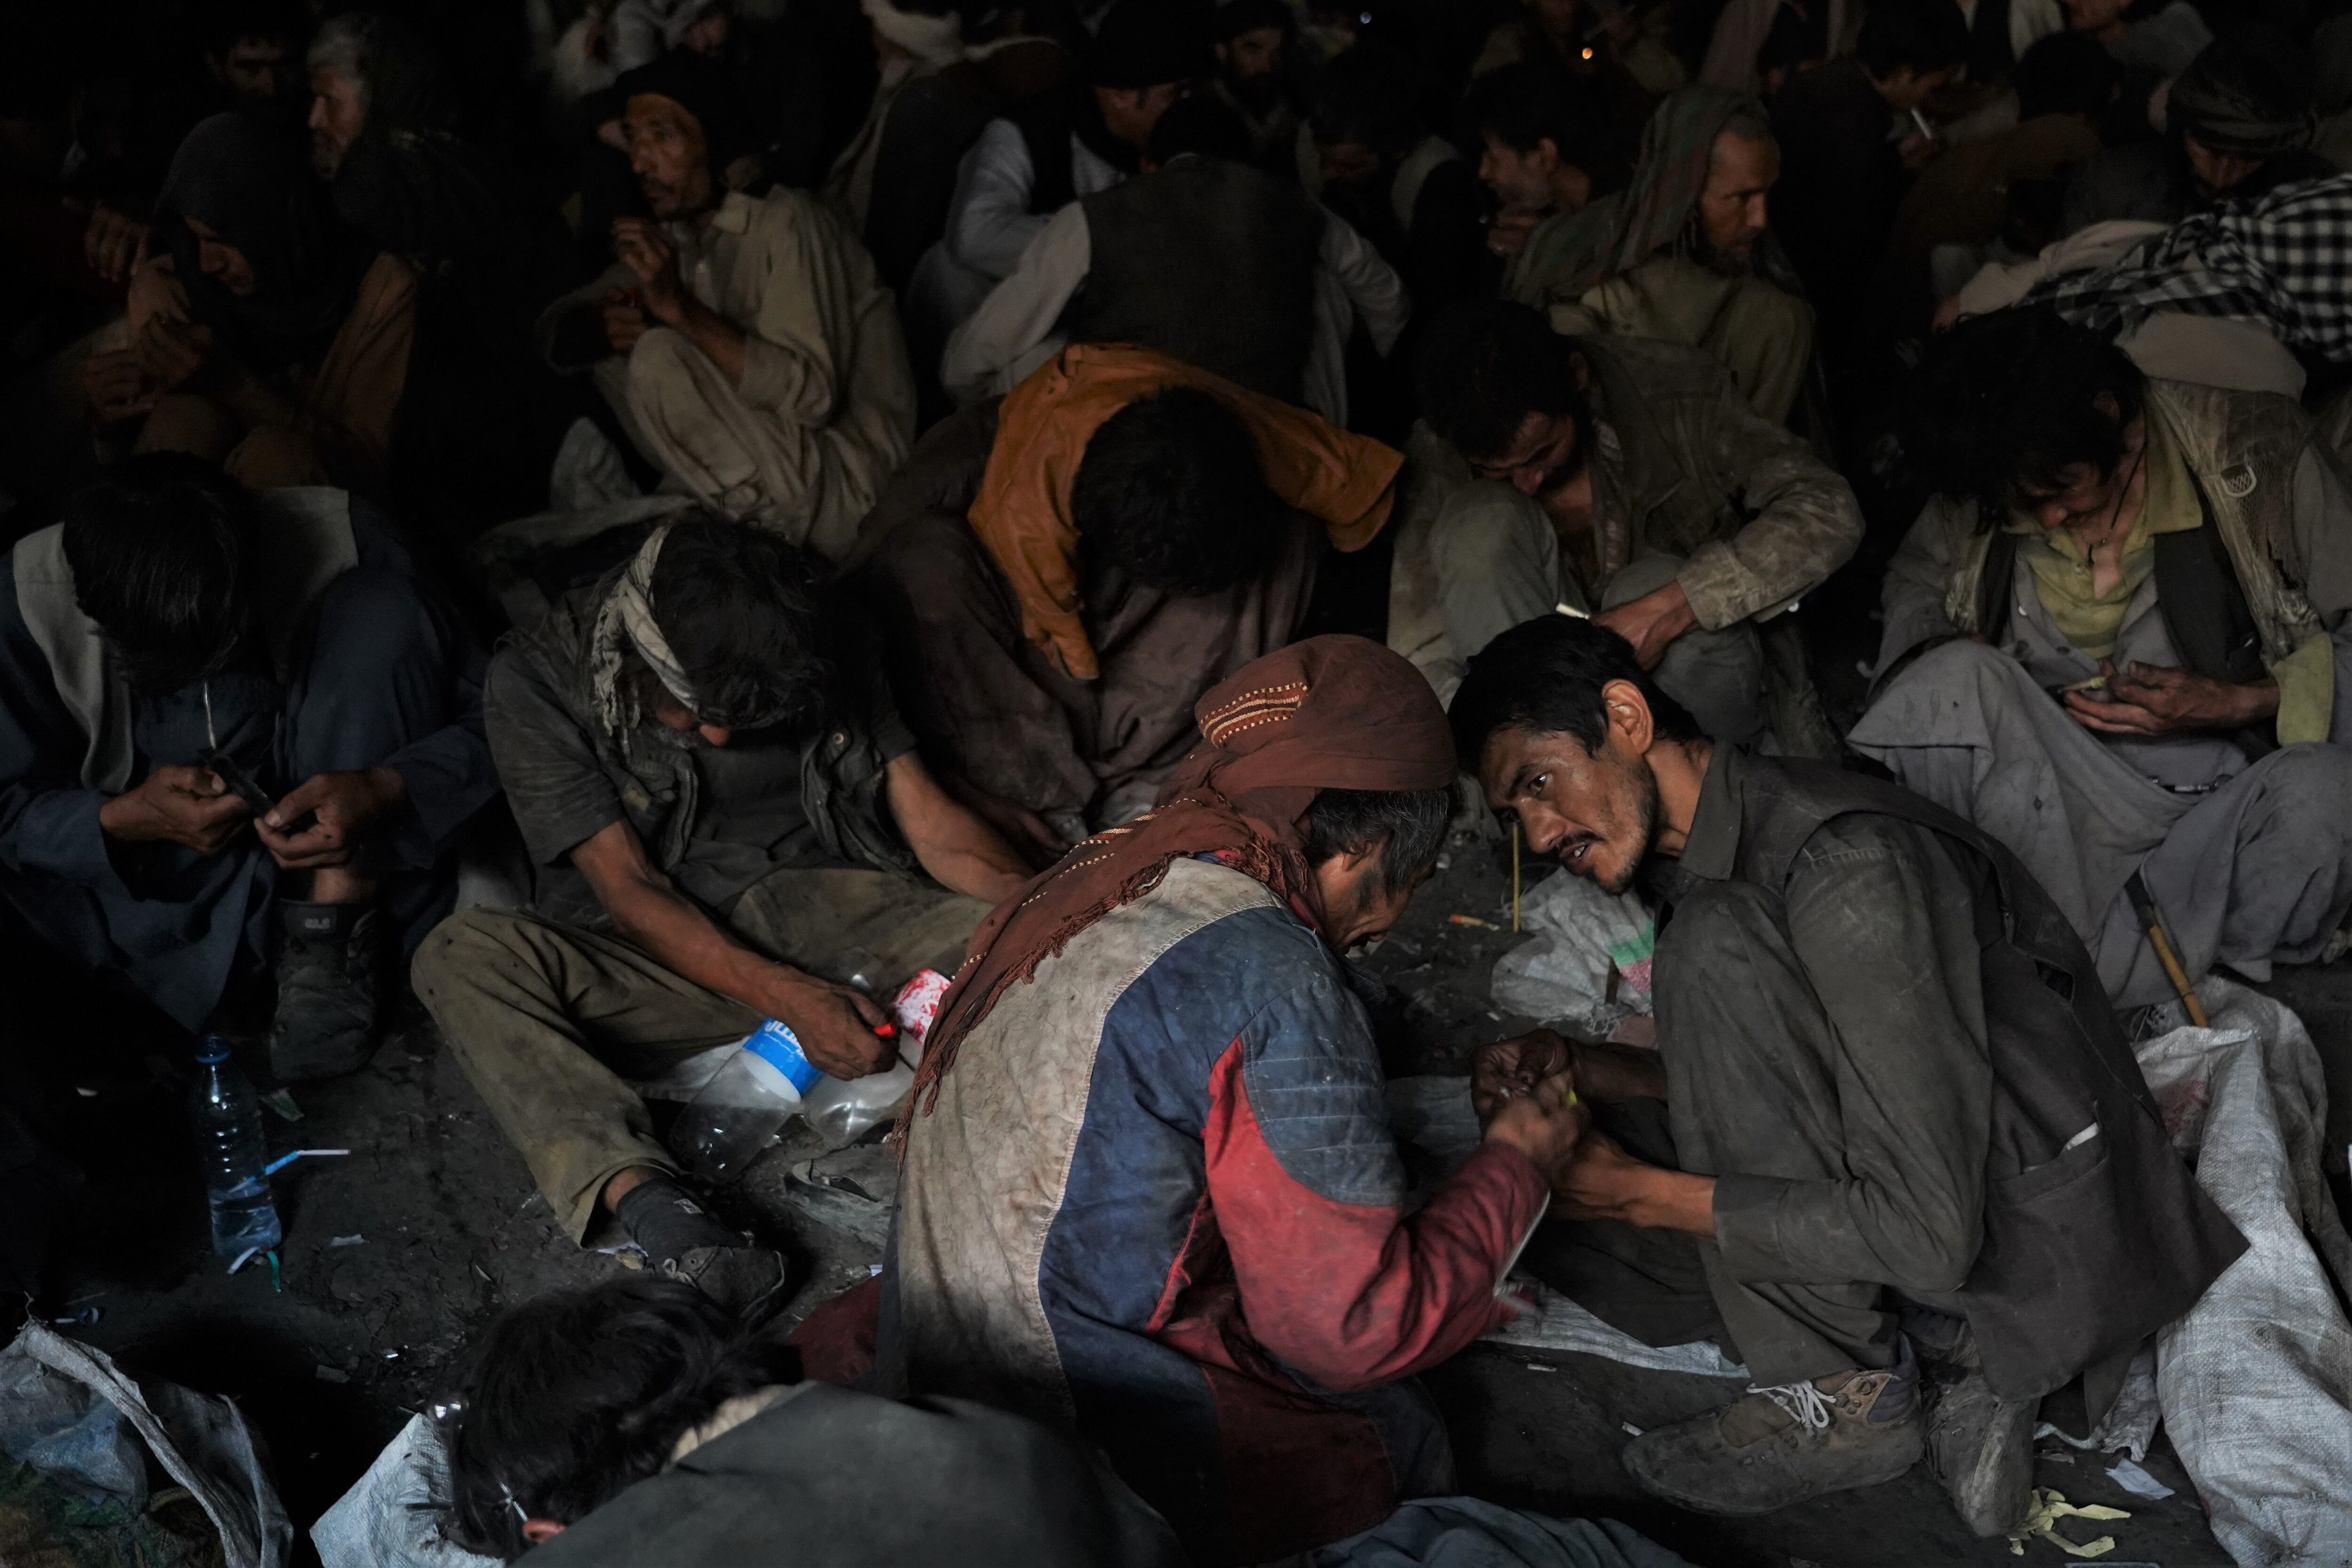 Sin apenas espacio para moverse, cientos de hombres consumen droga debajo del puente de Pul-e-Sukhta de Kabul.